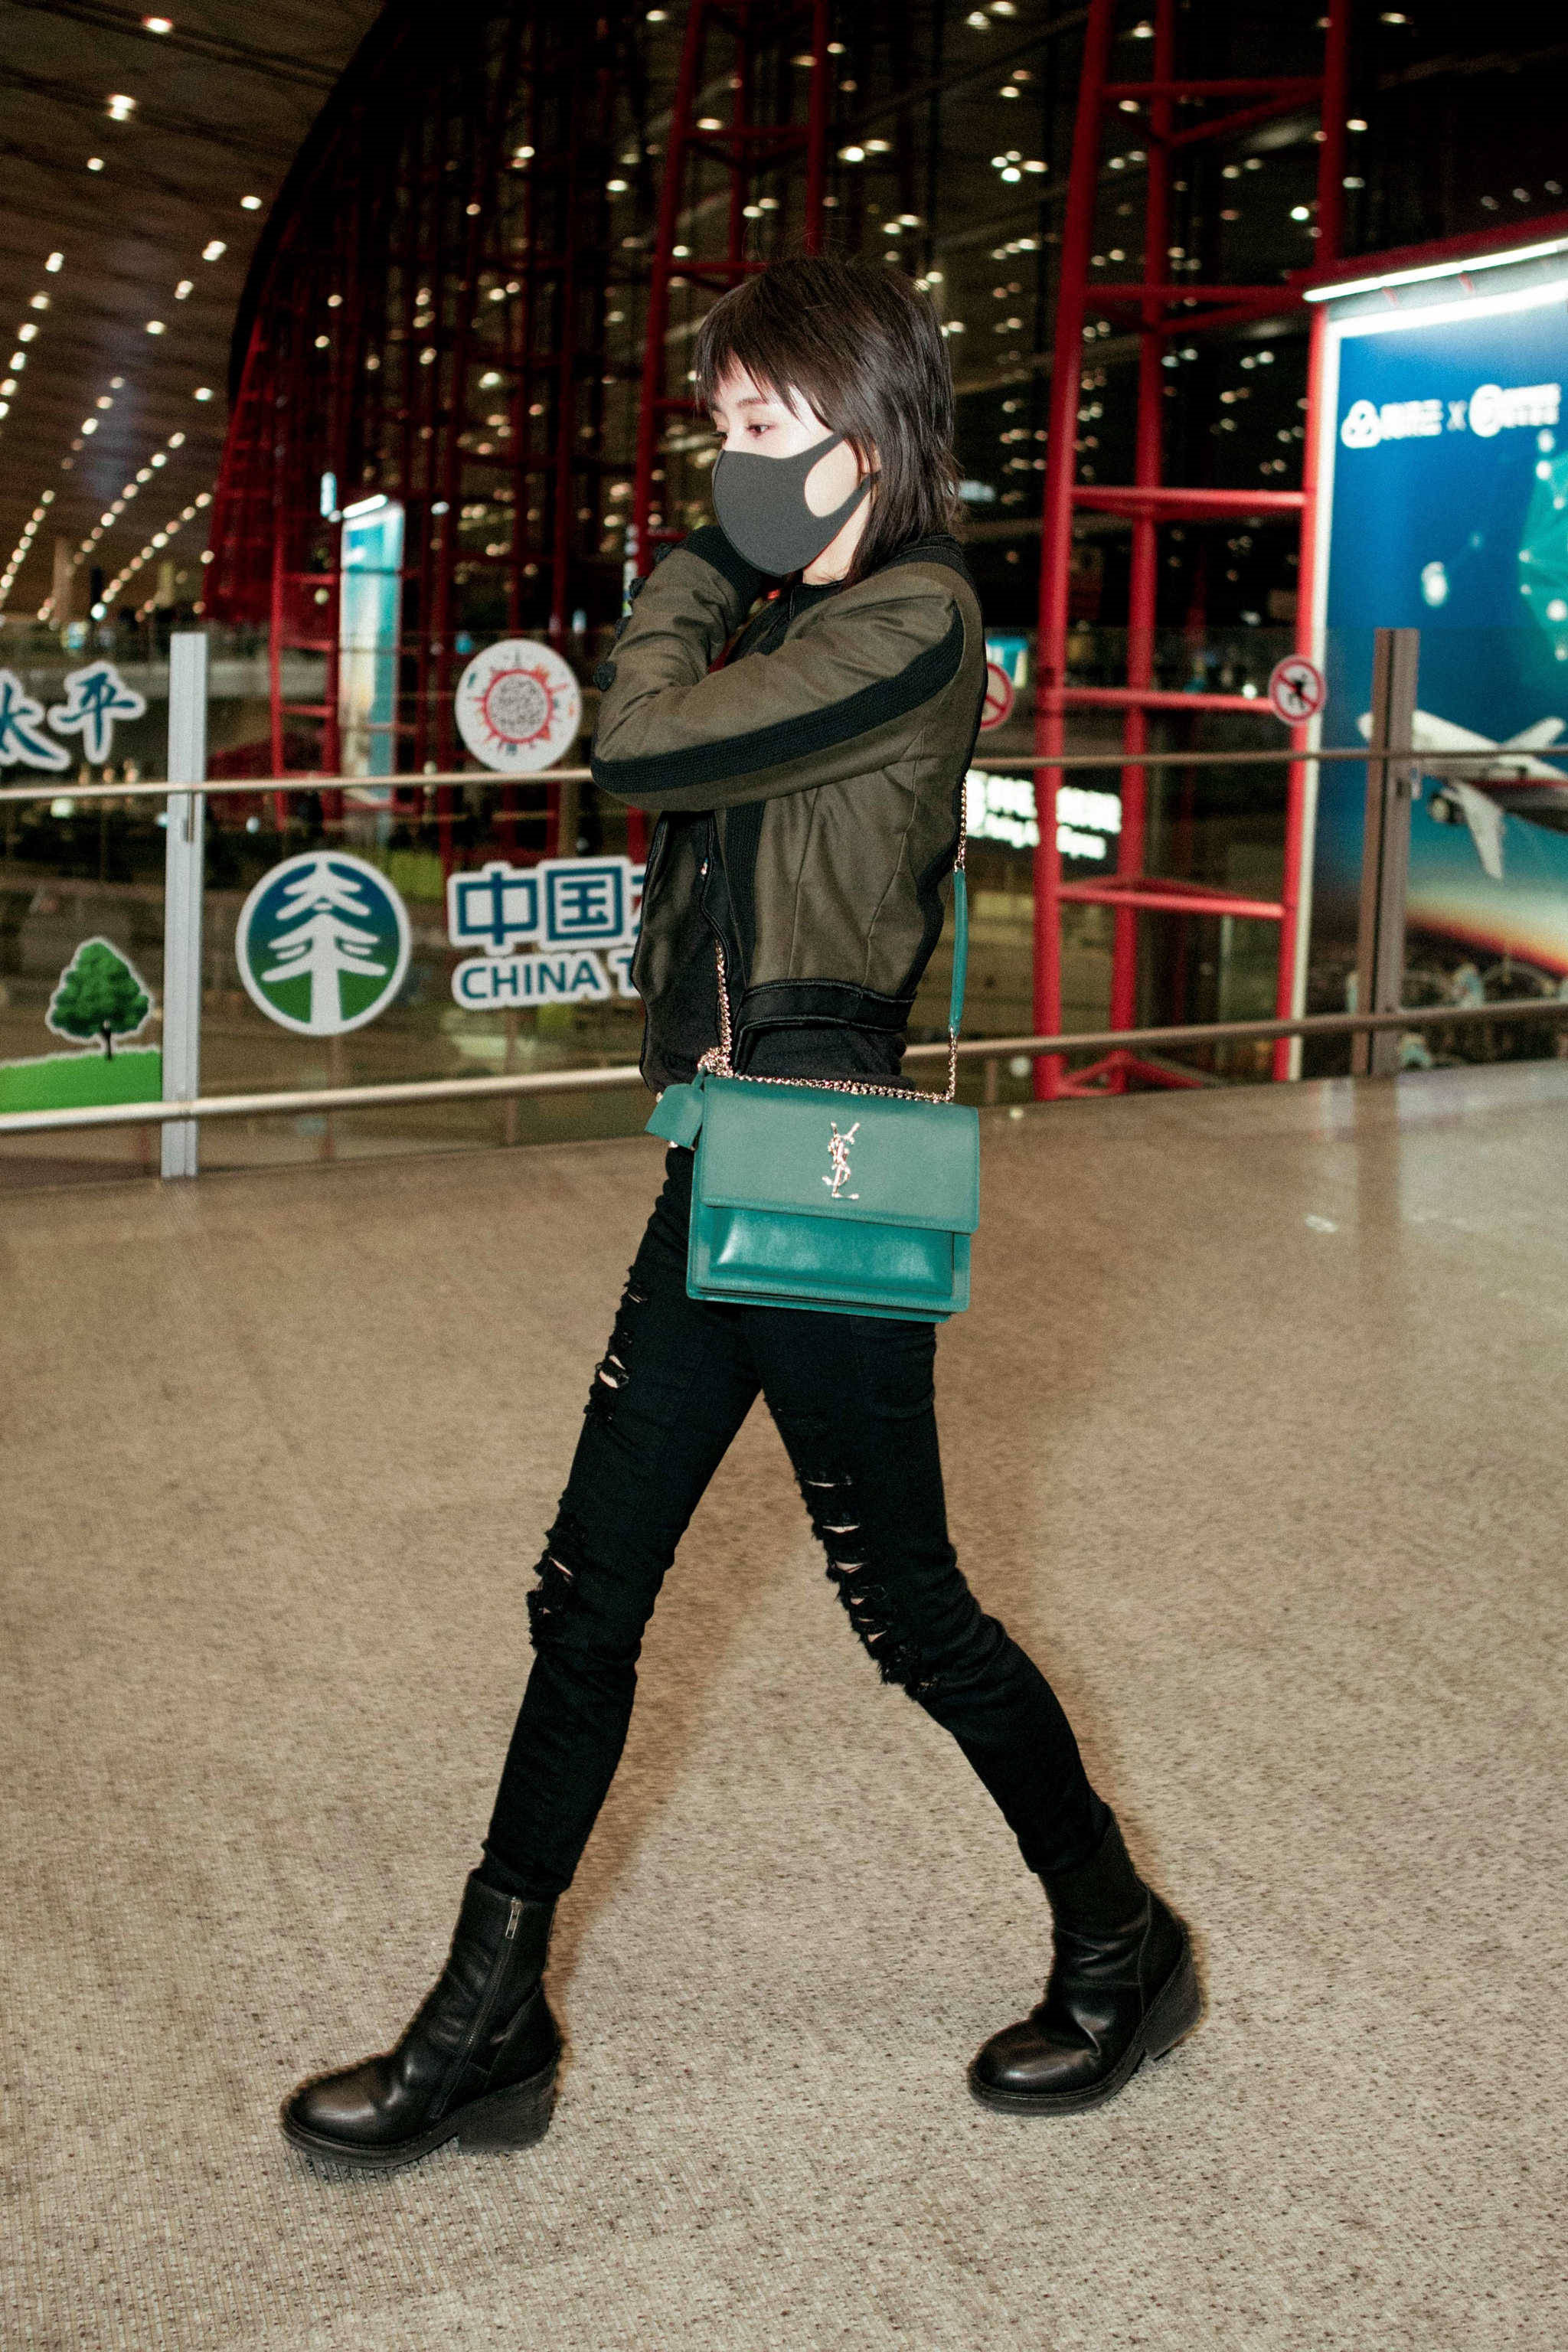 王子文亮相机场,一身黑色干练又帅气,搭配绿色的ysl包包独具个性